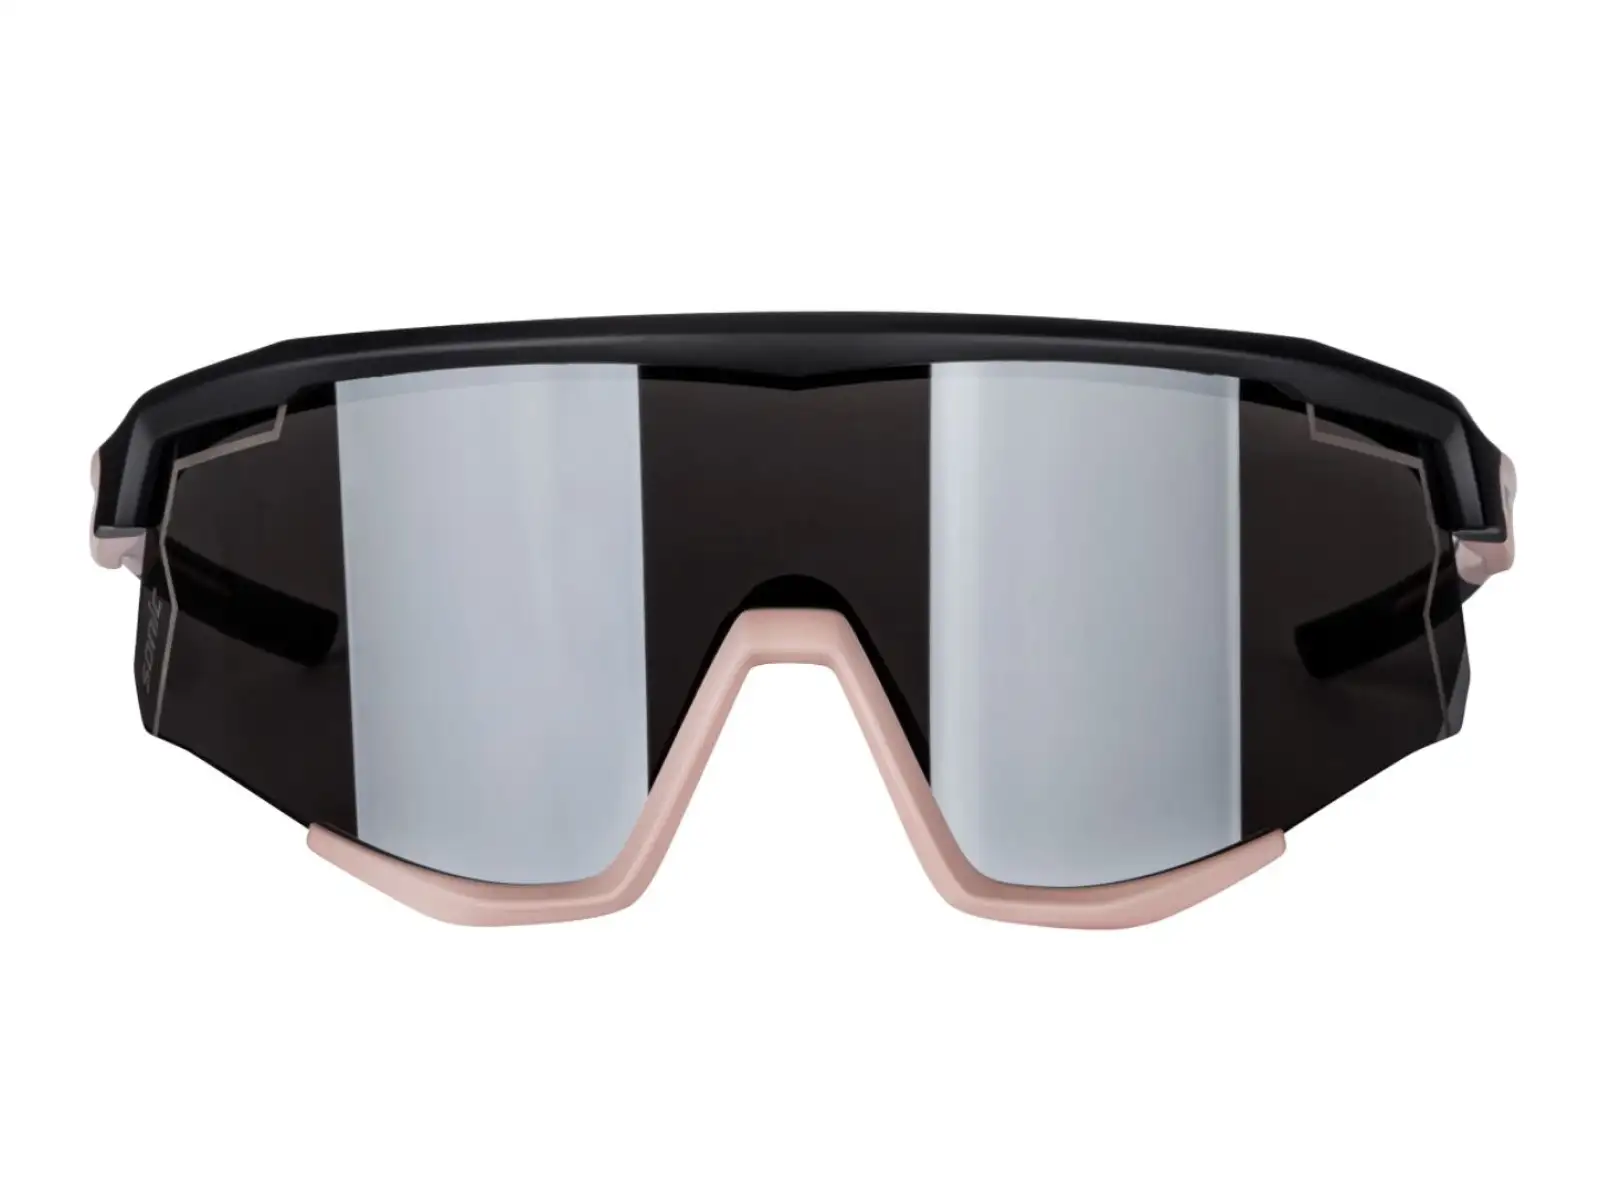 Force Sonic cyklistické brýle černá/bronzová, stříbrná zrcadlová skla